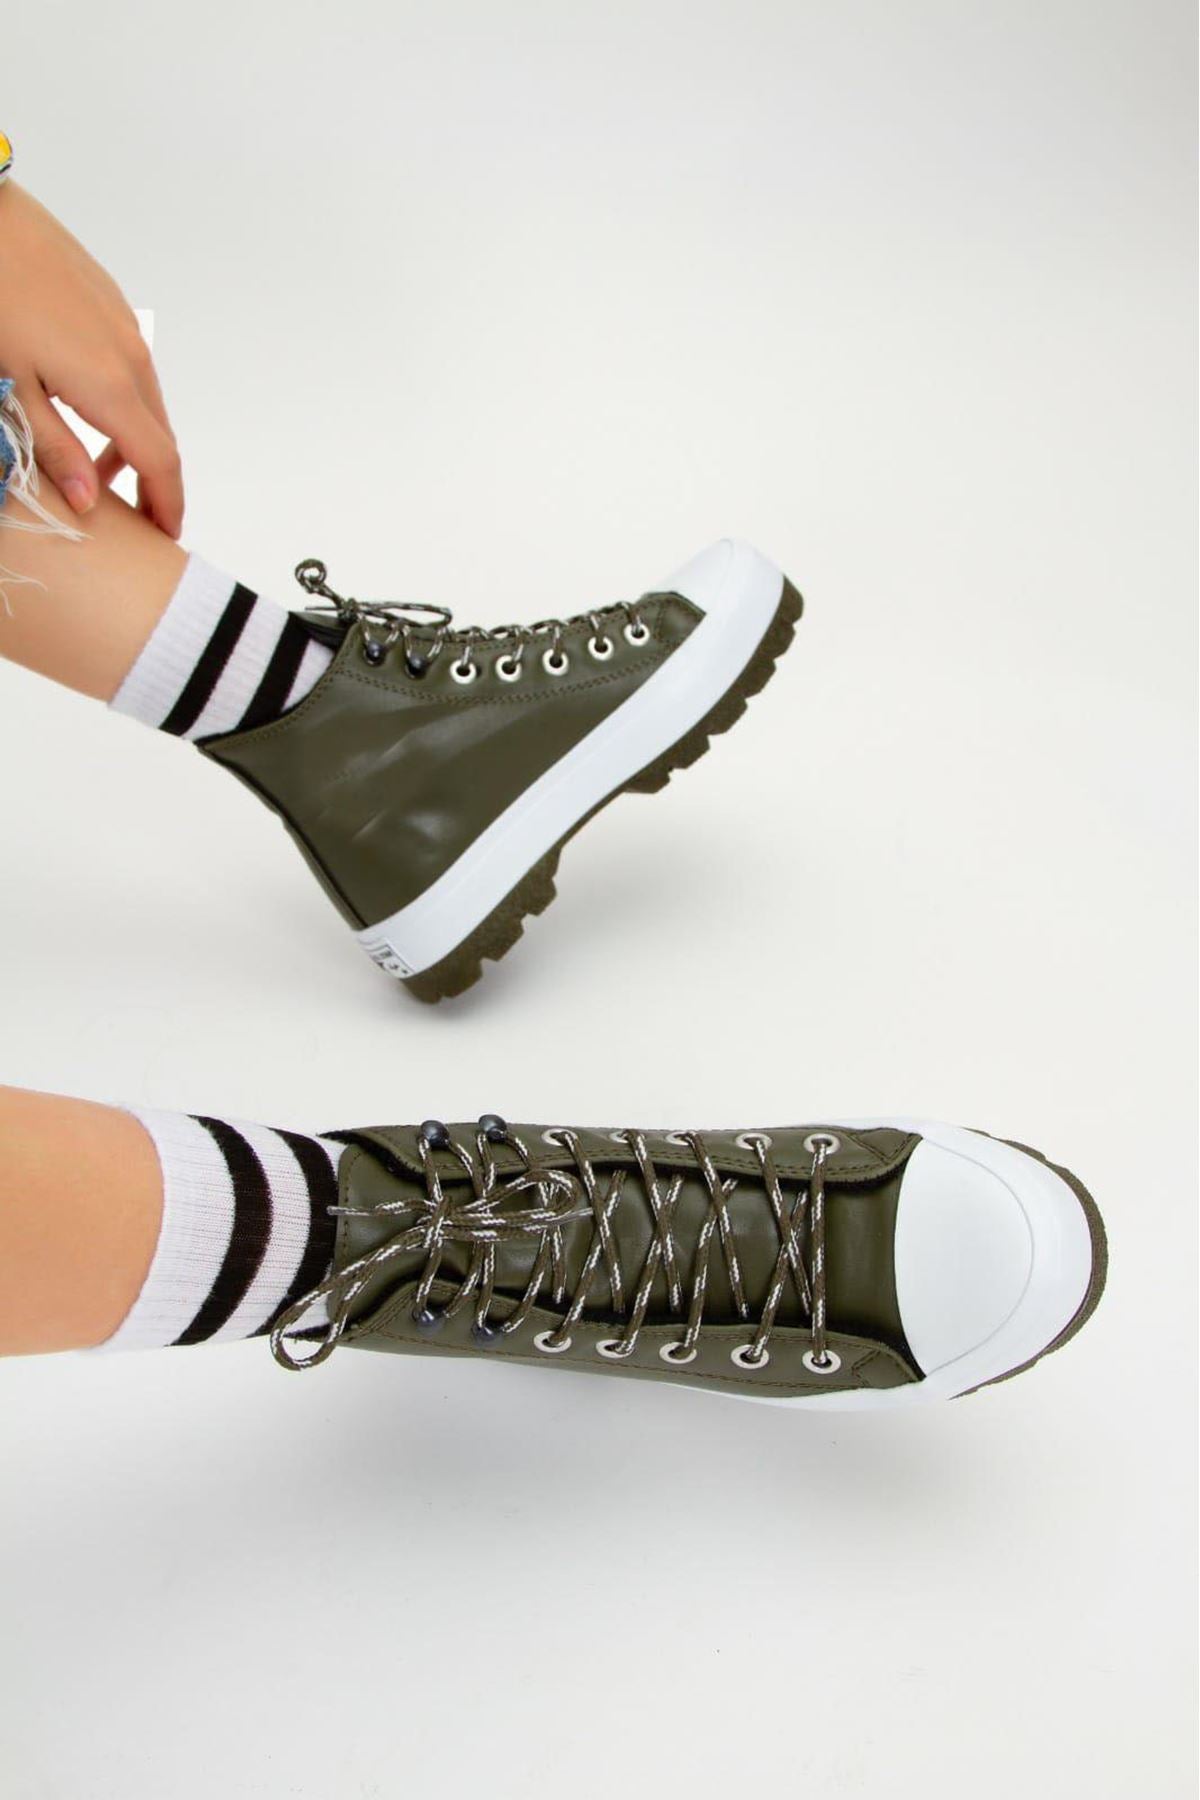 Feris Khaki Luxury Women's Sports Boots - STREET MODE ™